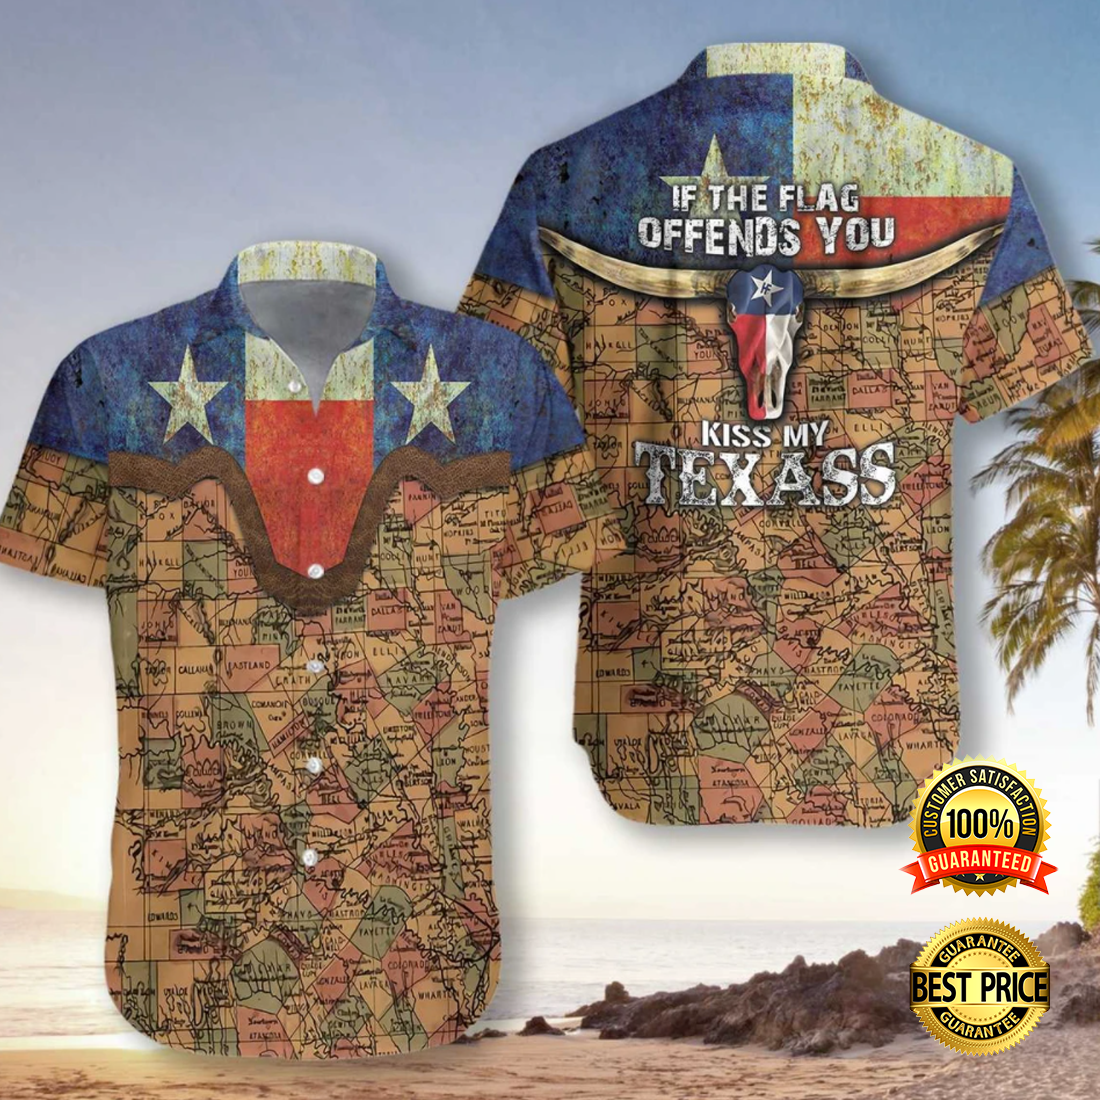 If the flag offends you kiss my Texass hawaiian shirt